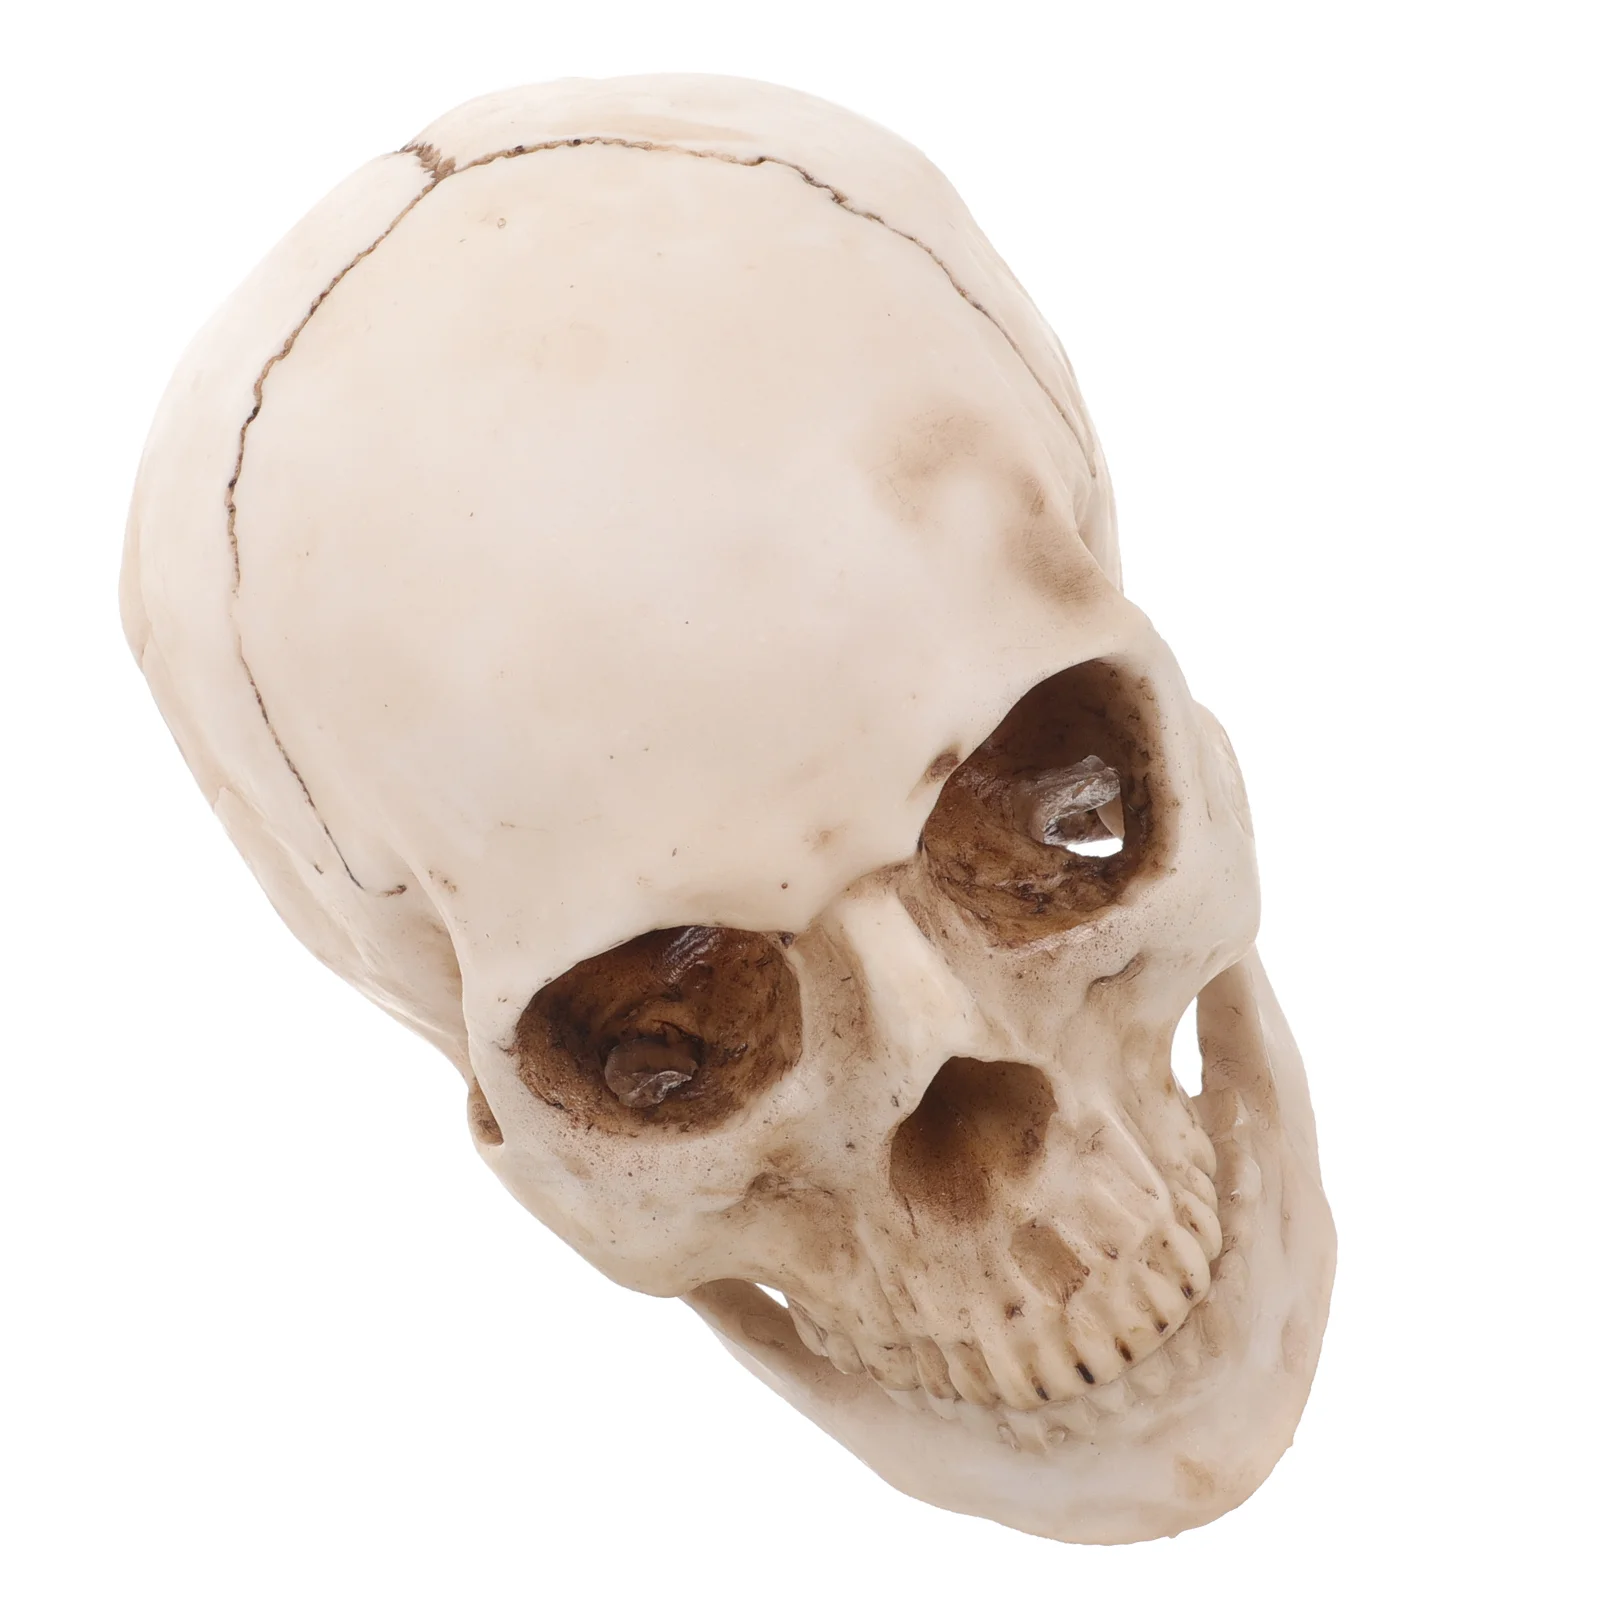 

Копия человеческого черепа, декор на Хэллоуин, Модель 1:1, нарядное платье для взрослых, животное